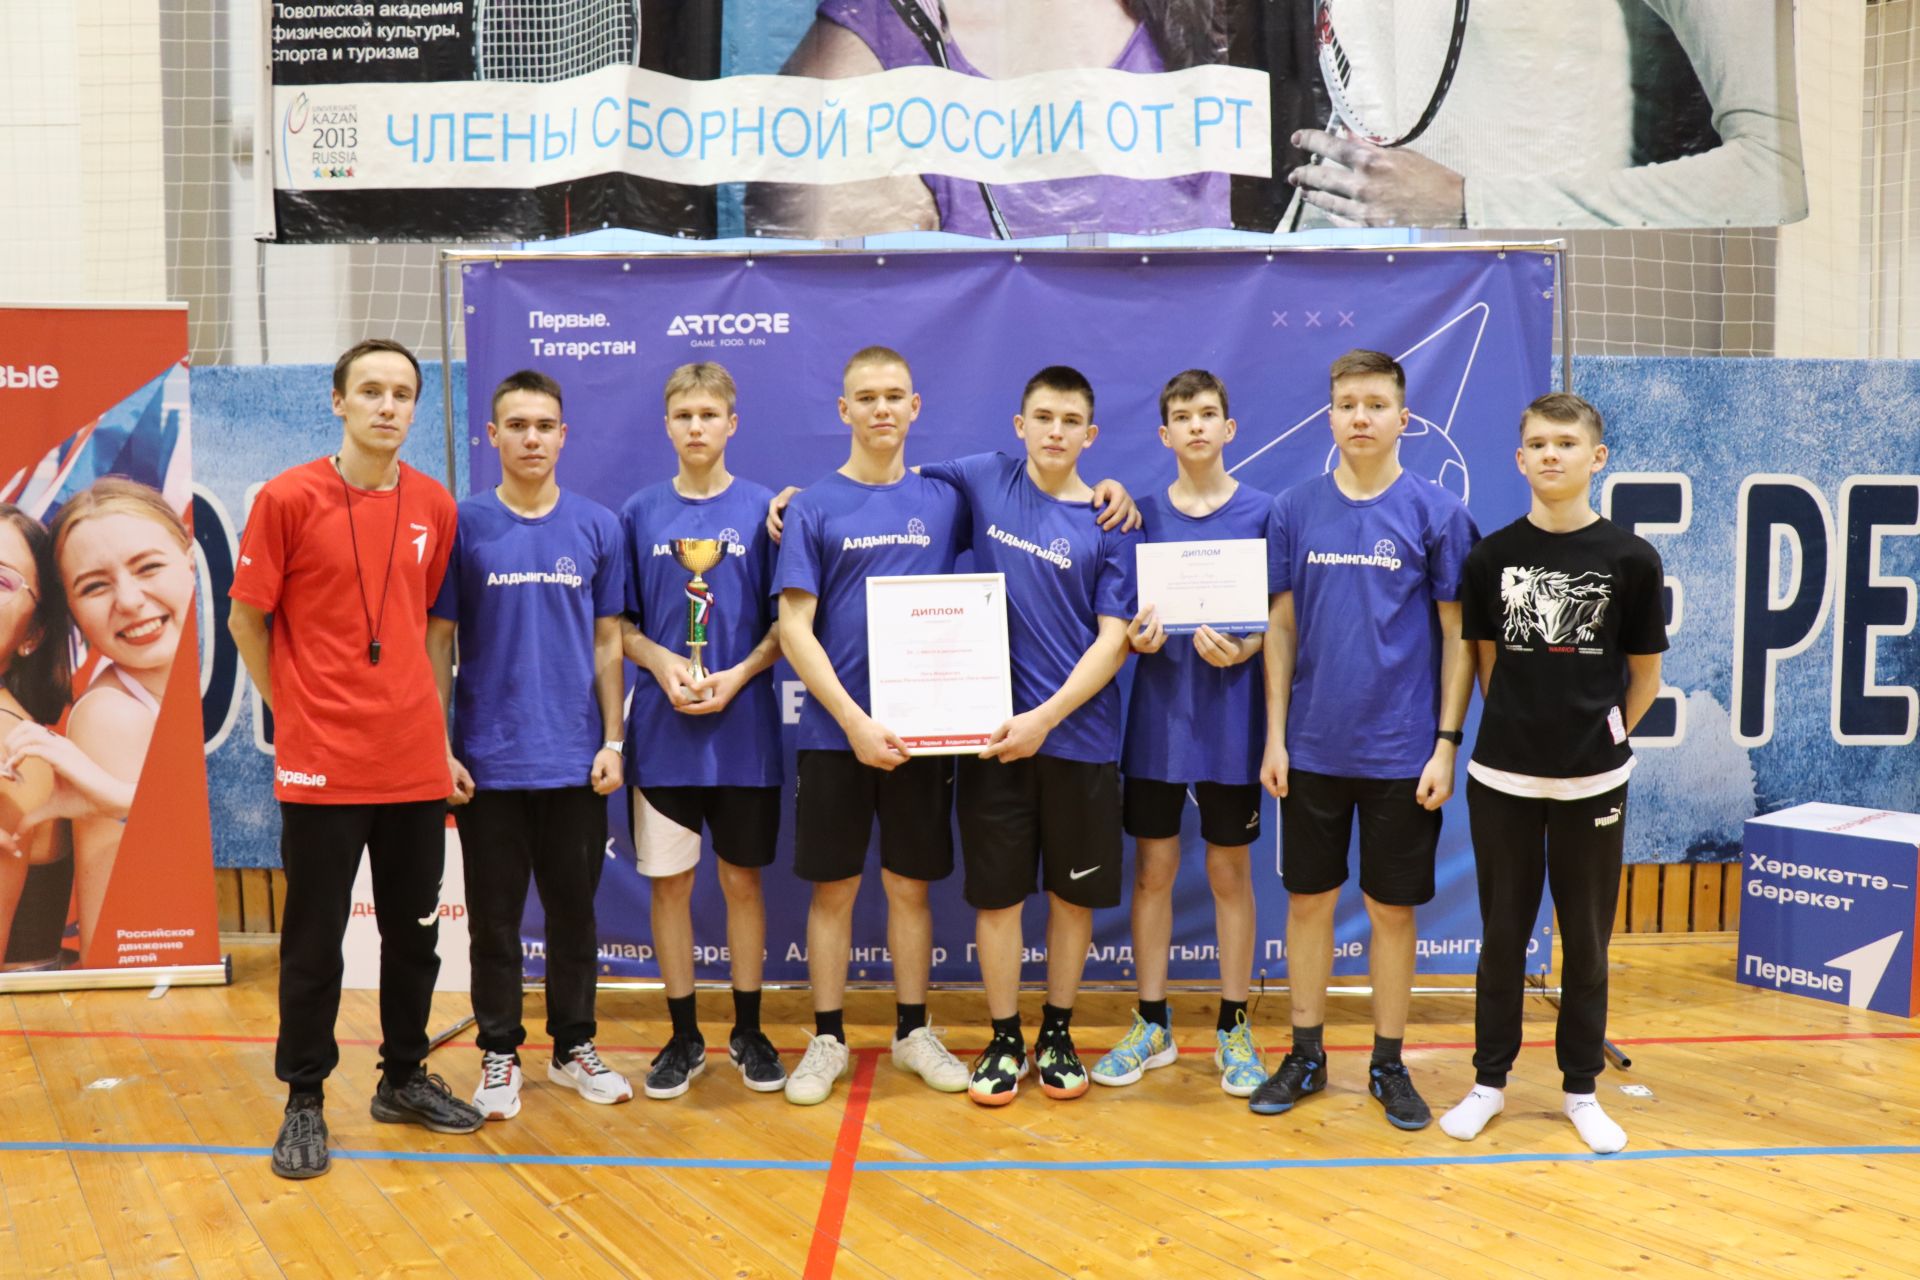 В Дрожжановском районе РТ прошли первые фиджитал-баскетбол соревнования